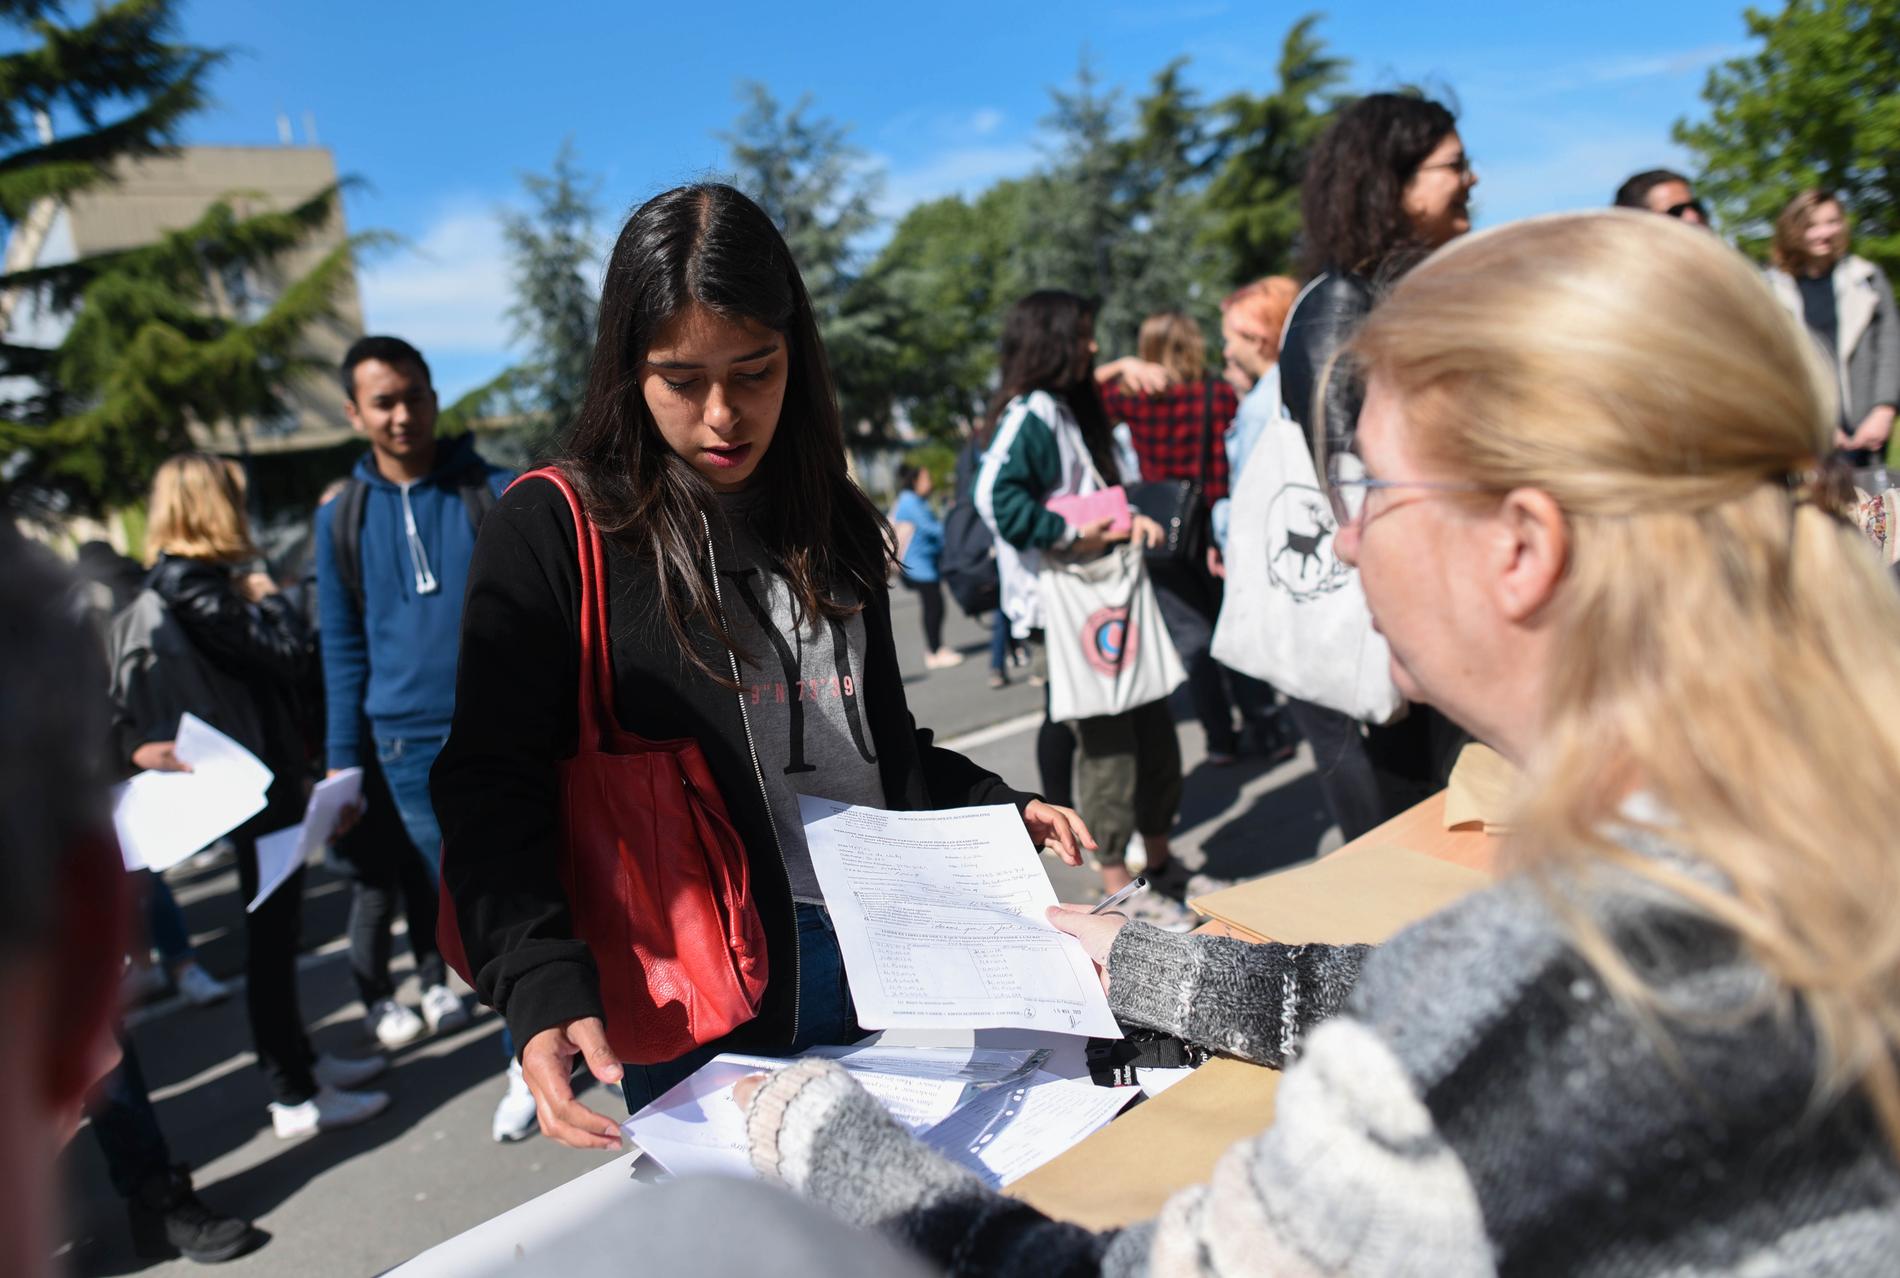 Studenten Luisa Mejias lämnar in en hemtenta till sin lärare, som fått sätta upp bord utanför en ockuperad byggnad för att kunna ta emot elevernas uppgifter.